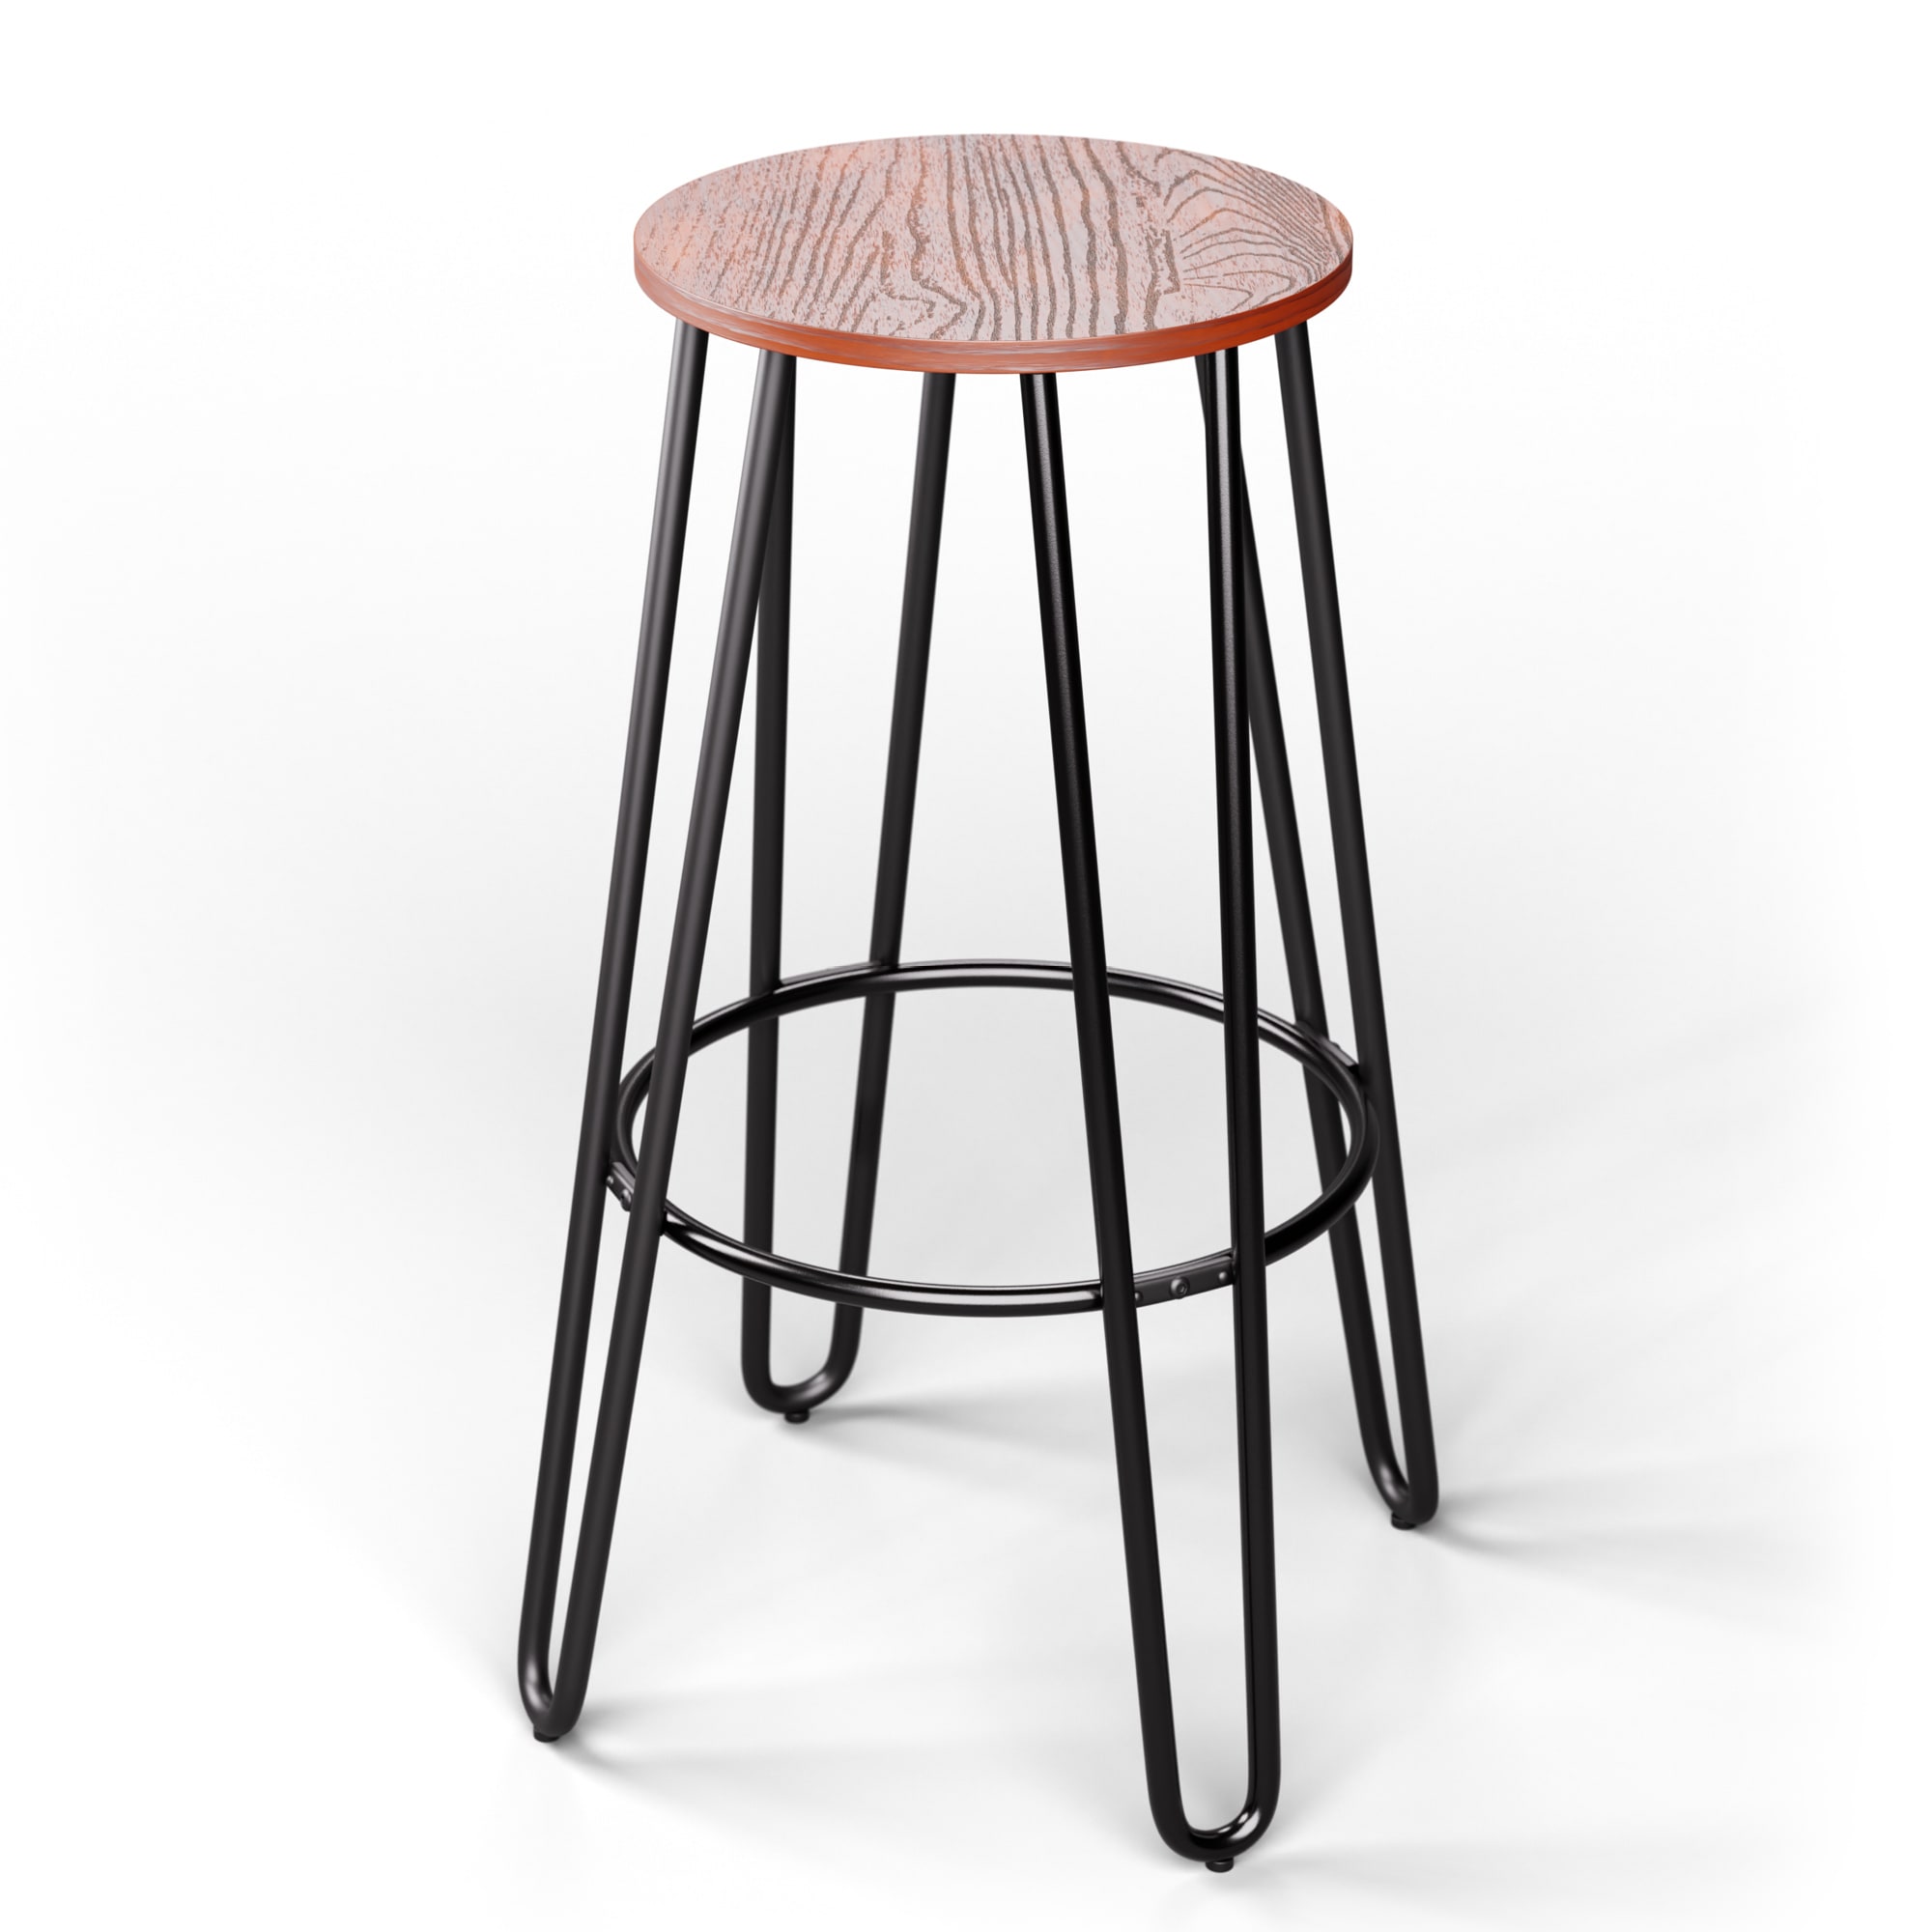 Blumfeldt 1 db. hamilton bisztró szék o33 cm fa acélkeret